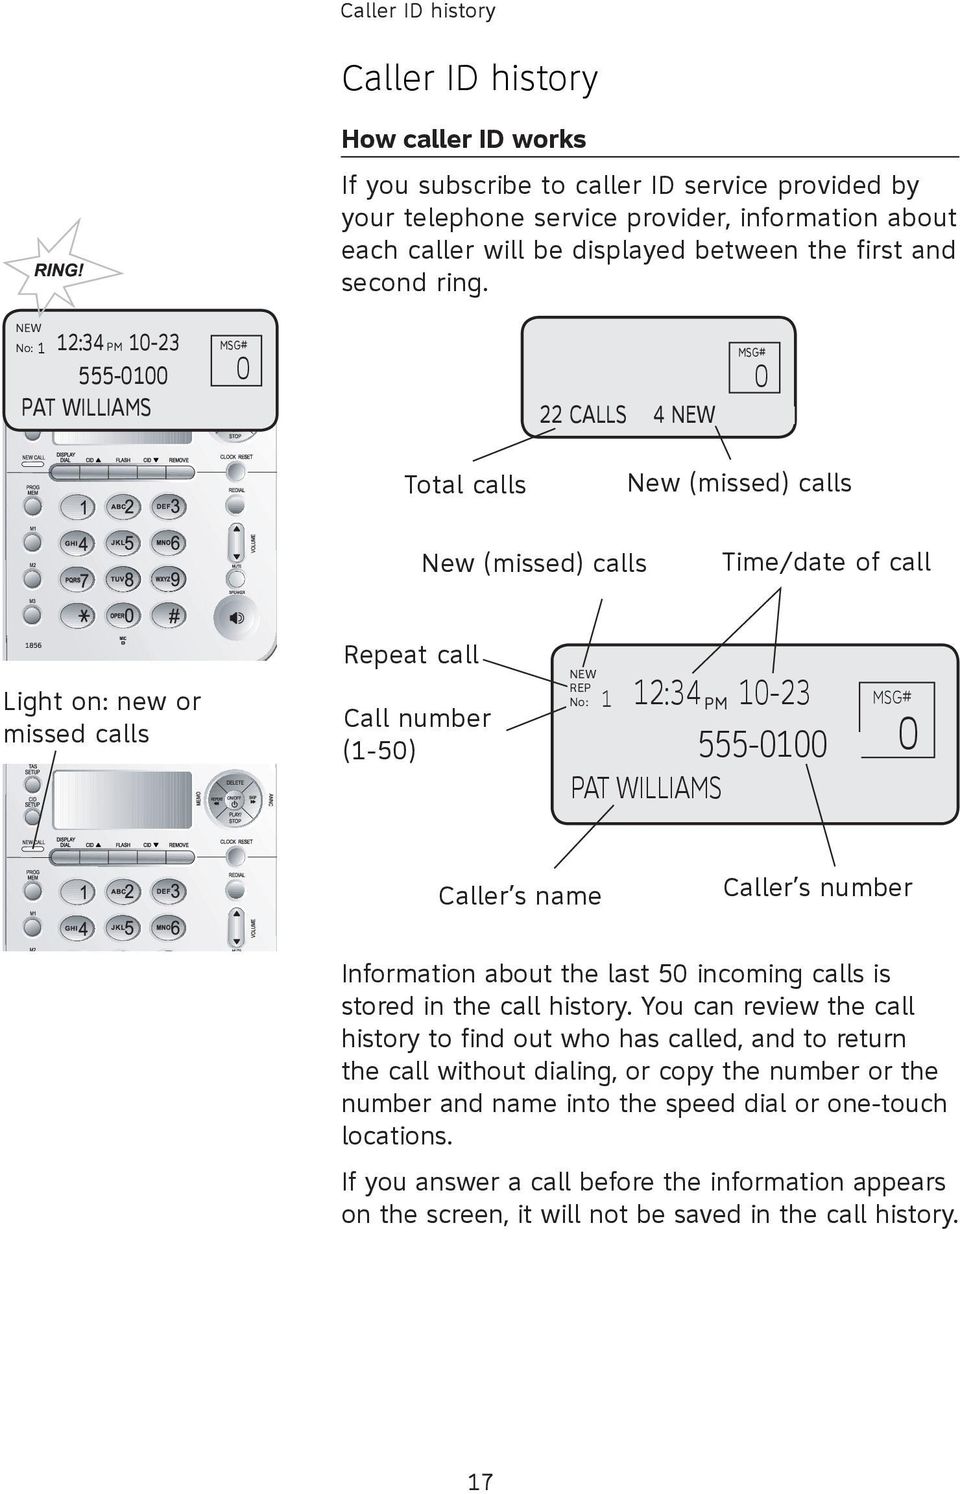 NEW No: 1 12:34 PM 10-23 555-0100 PAT WILLIAMS 0 0 22 CALLS 4 NEW Total calls New (missed) calls New (missed) calls Time/date of call Light on: new or missed calls Repeat call Call number (1-50) NEW